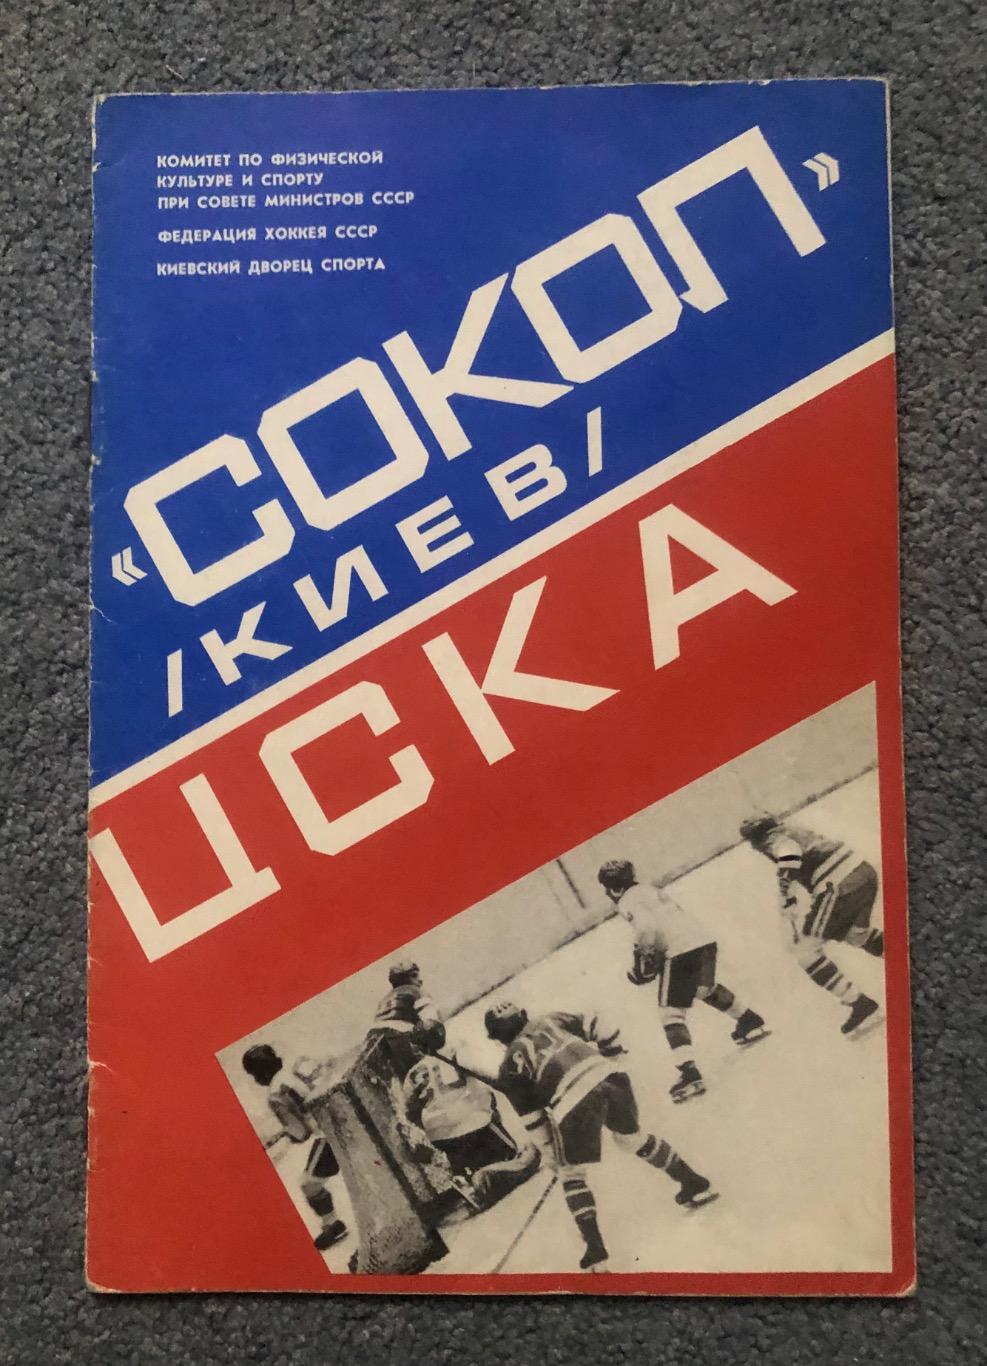 Сокол Киев - ЦСКА, 12 и 14.03.1979